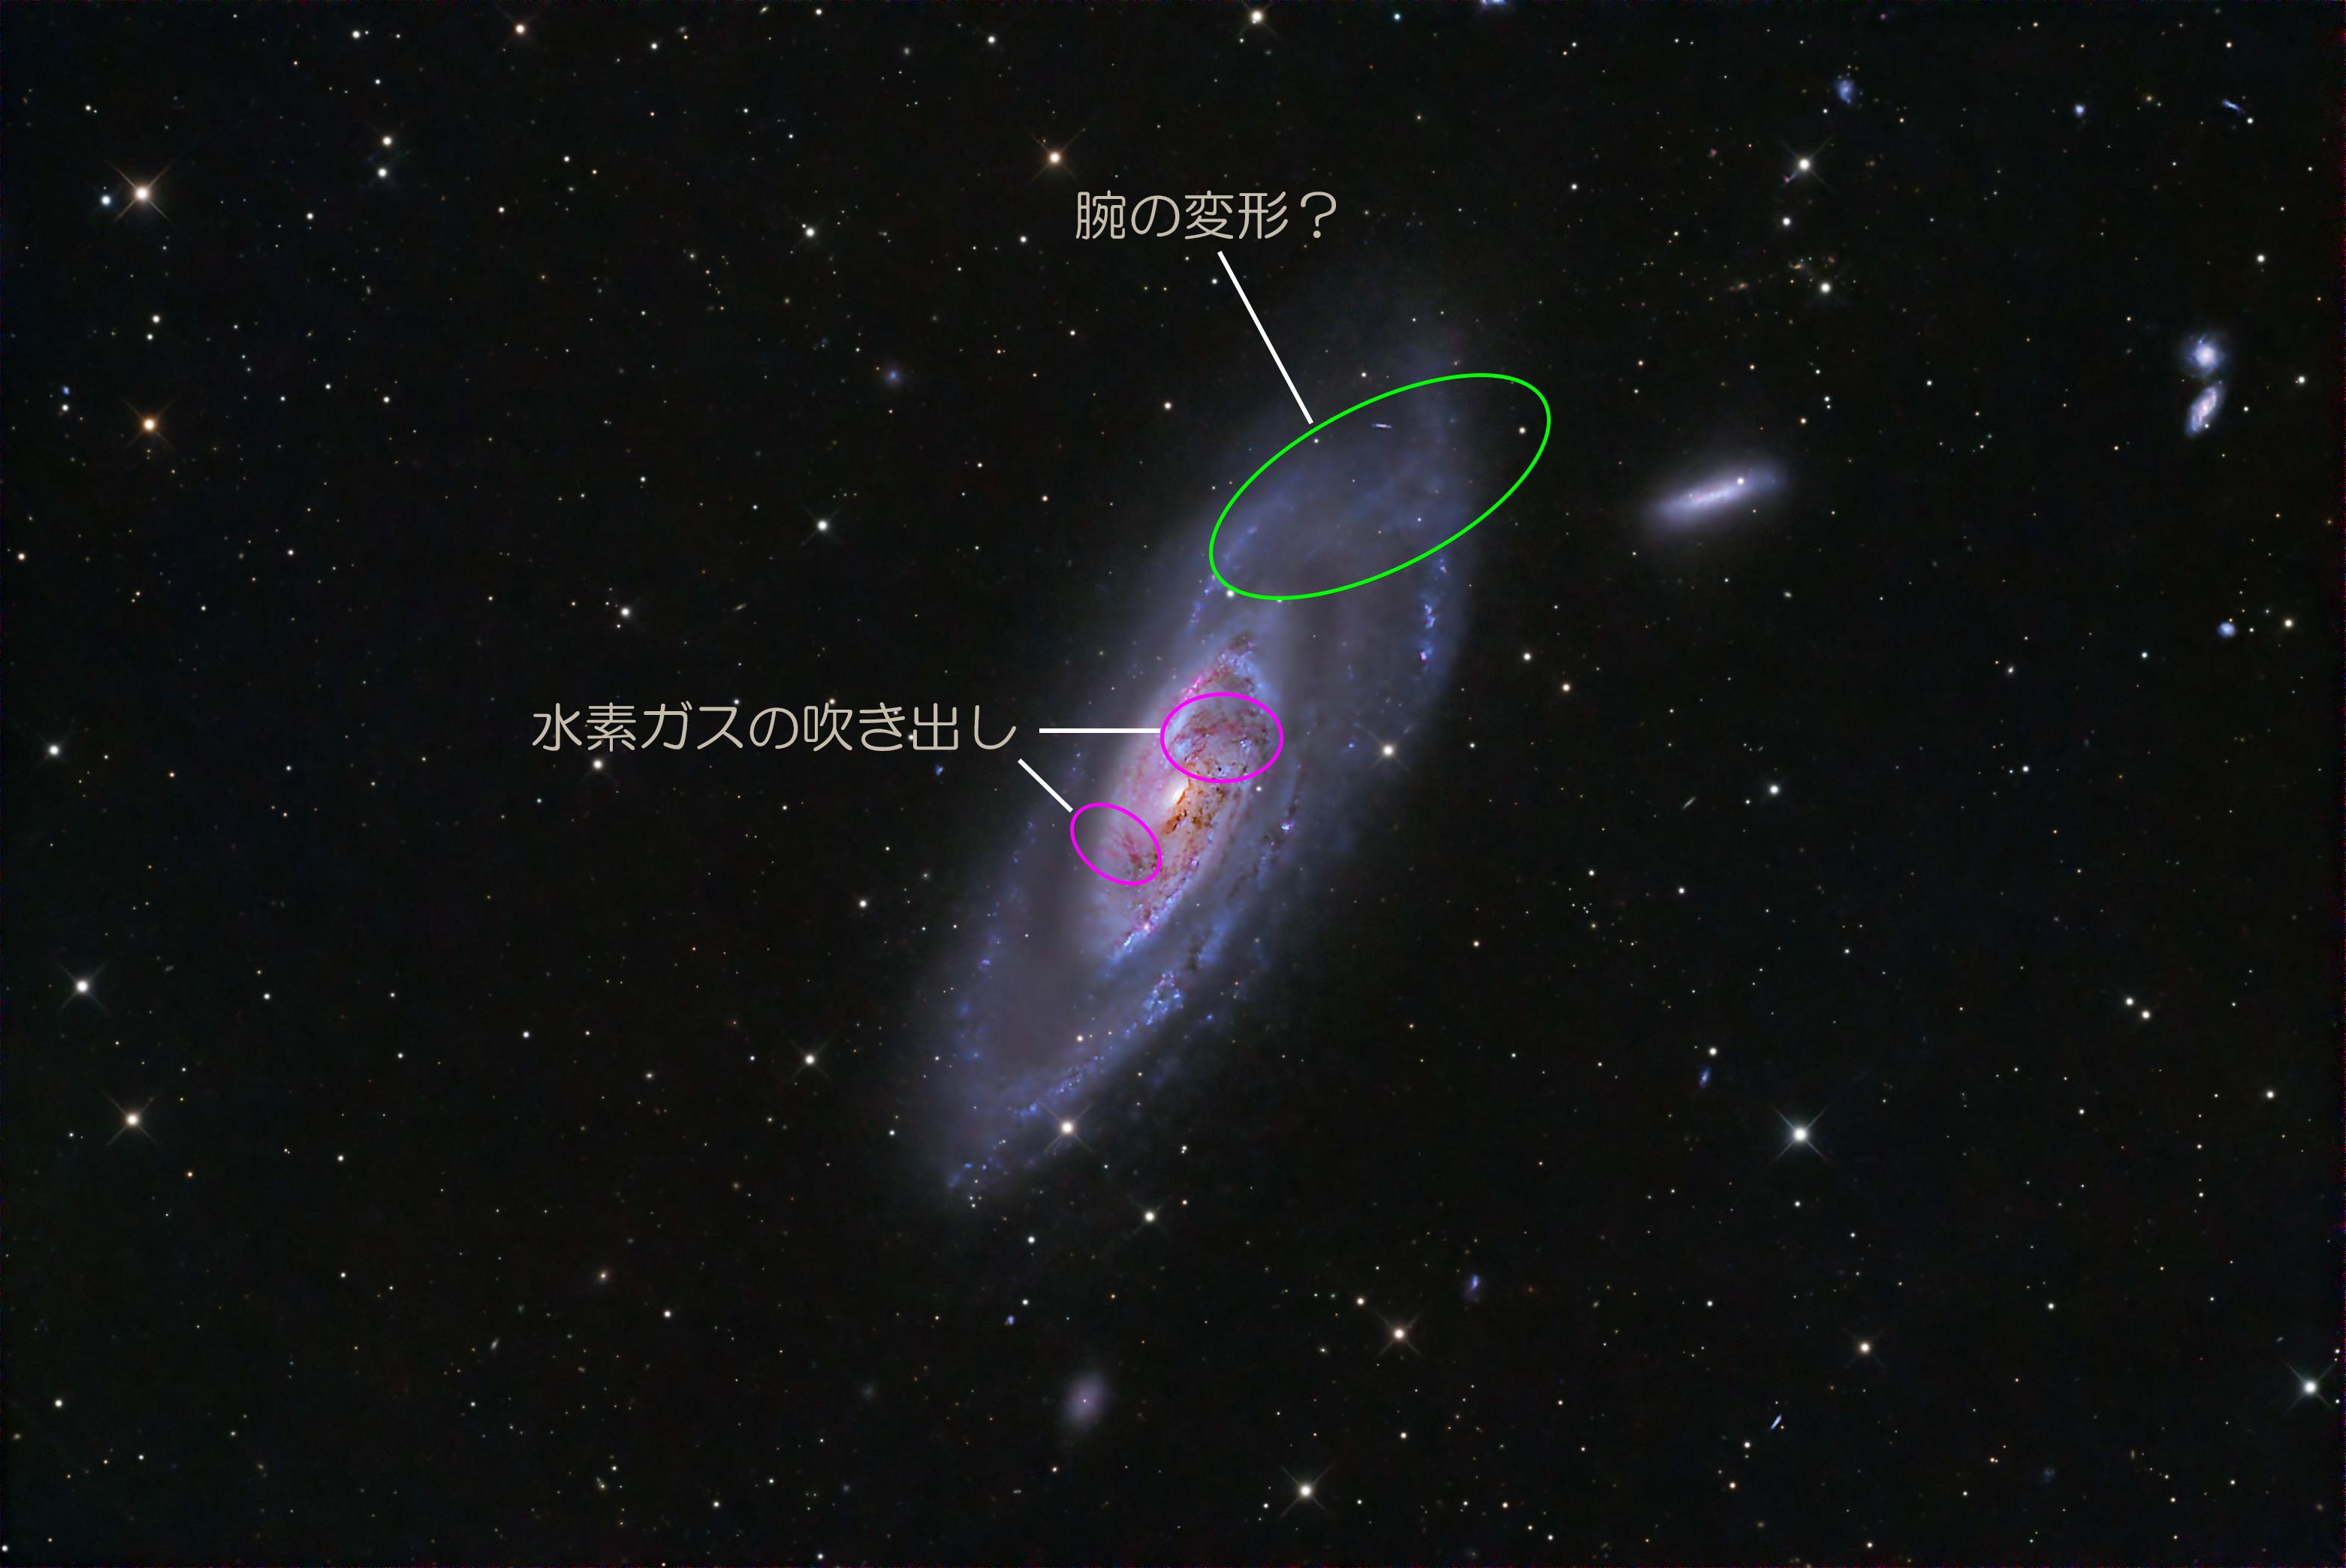 Re: りょうけん座の渦巻銀河 M106